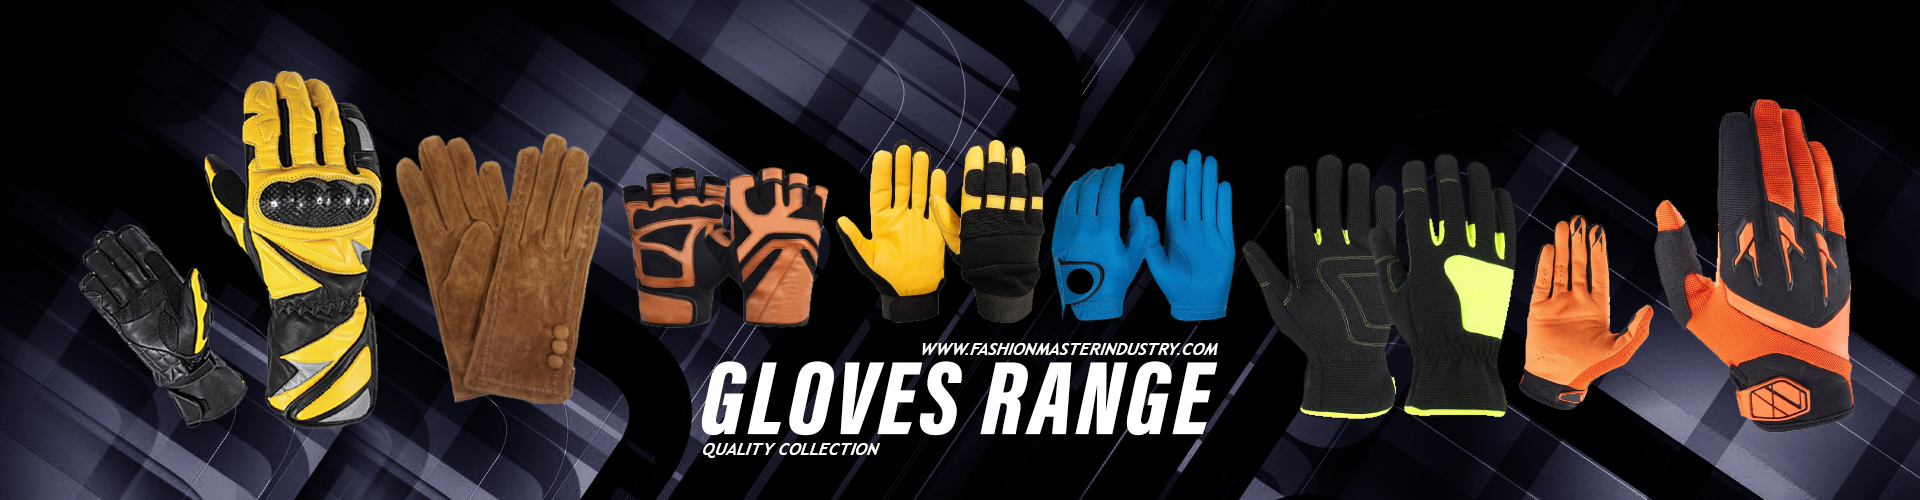 Gloves Range